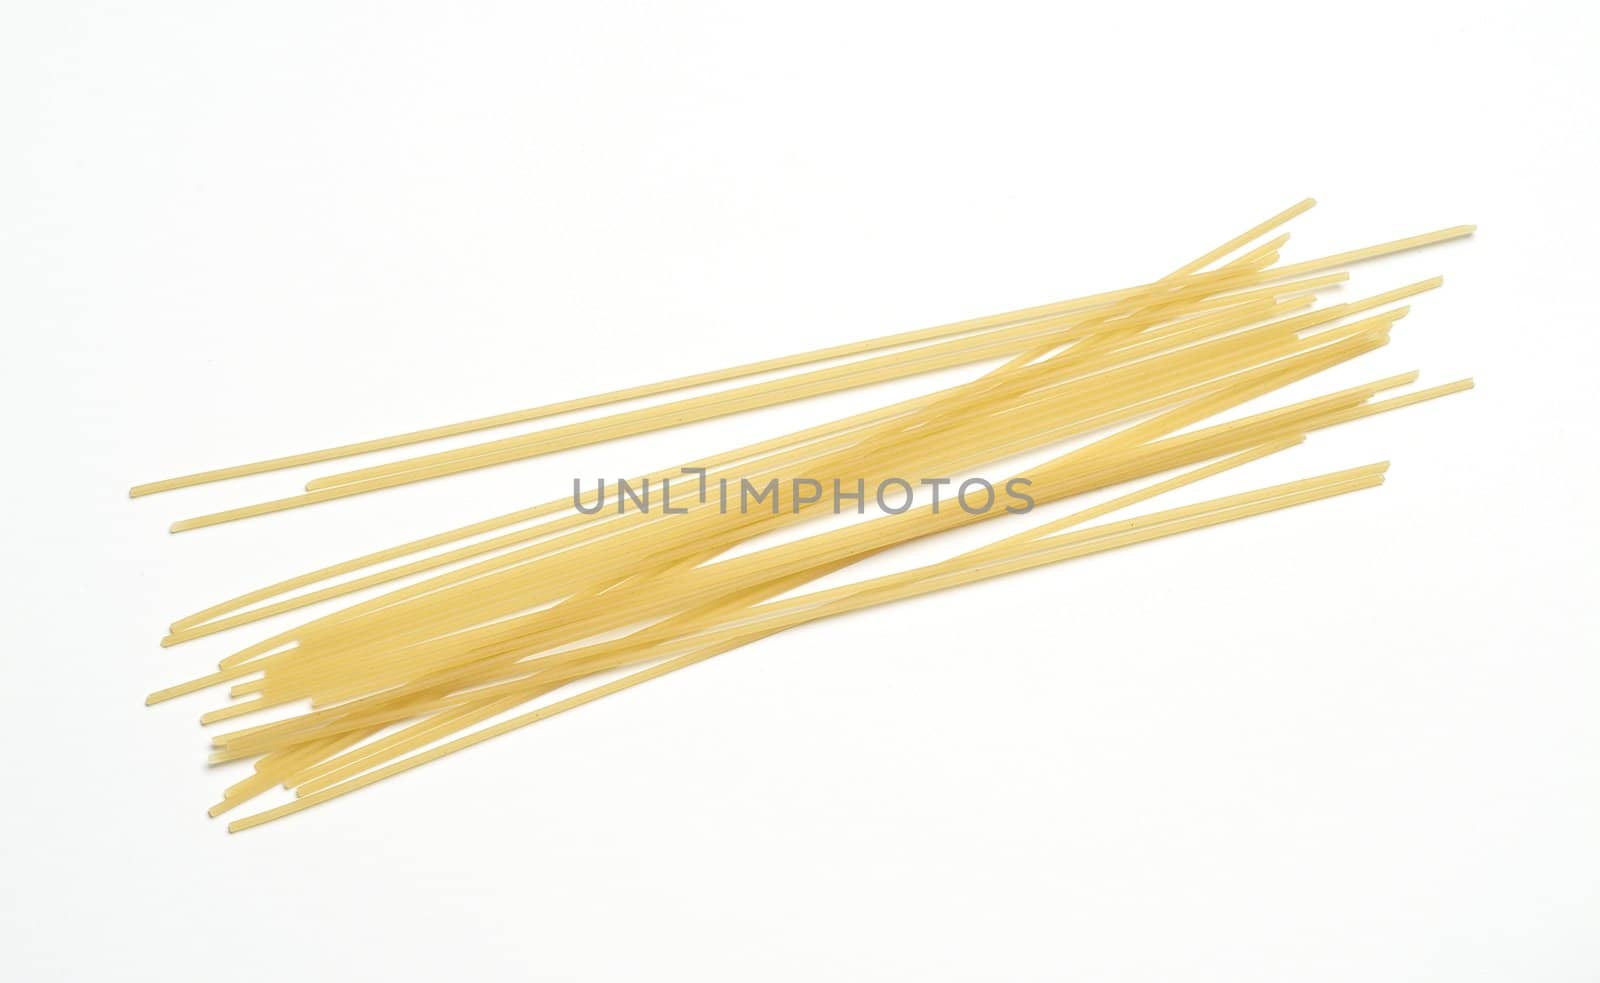 Italian pasta "spaghetti" isolated on white